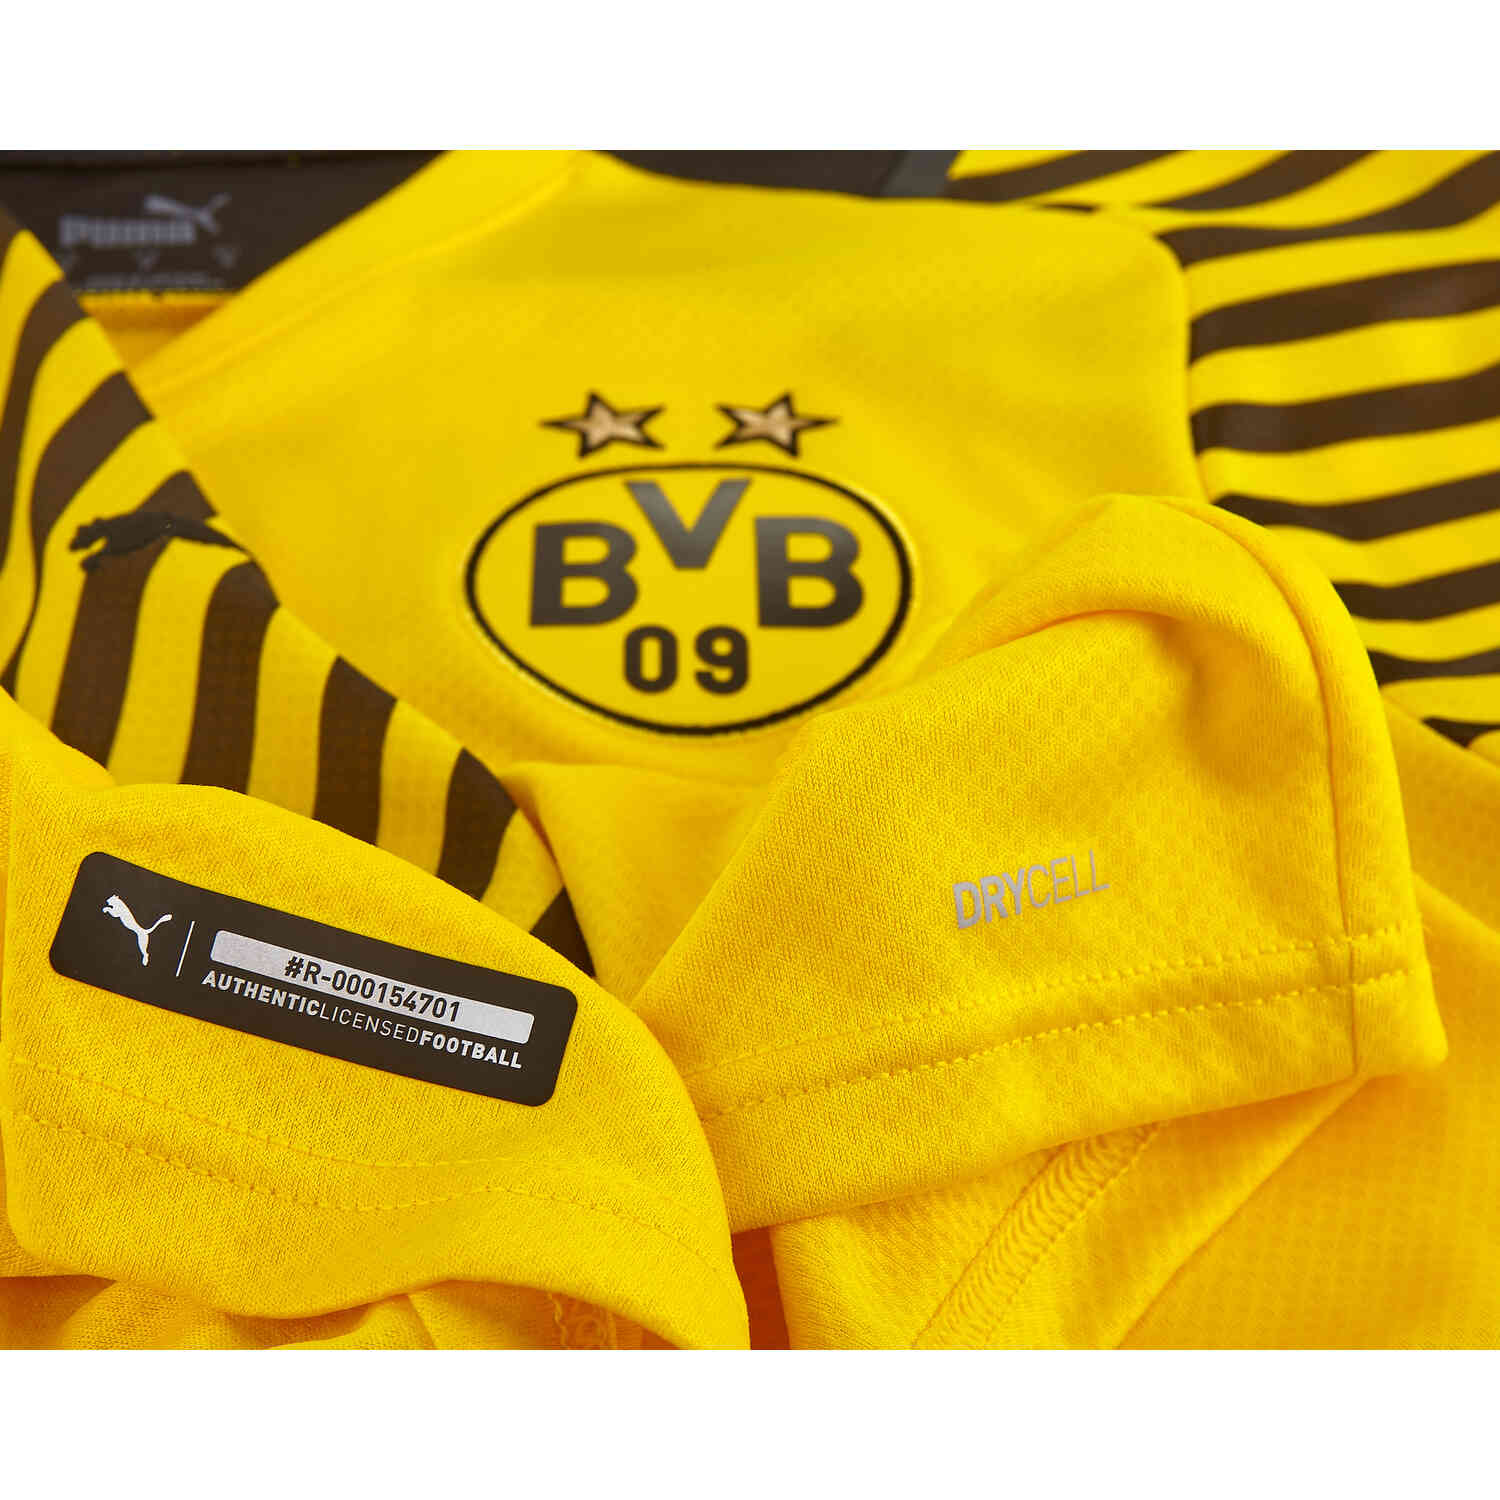 Dortmund Reus fanshirt trikot shorts socken kinder boys Gr 134 140 146 